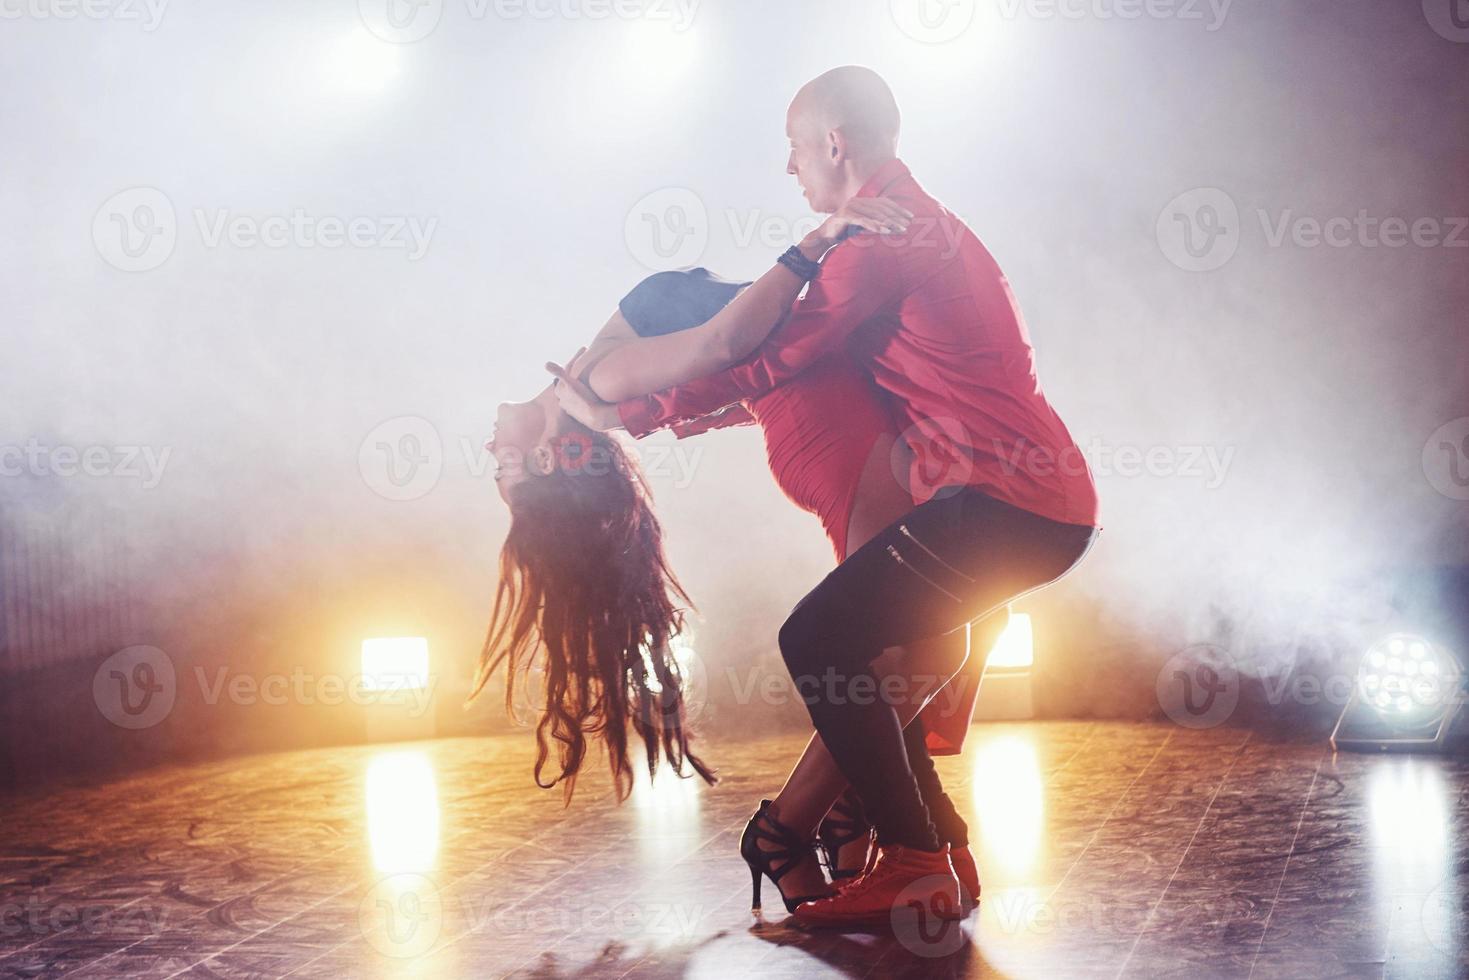 hábiles bailarines actuando en la habitación oscura bajo la luz y el humo del concierto. pareja sensual realizando una danza contemporánea artística y emocional foto